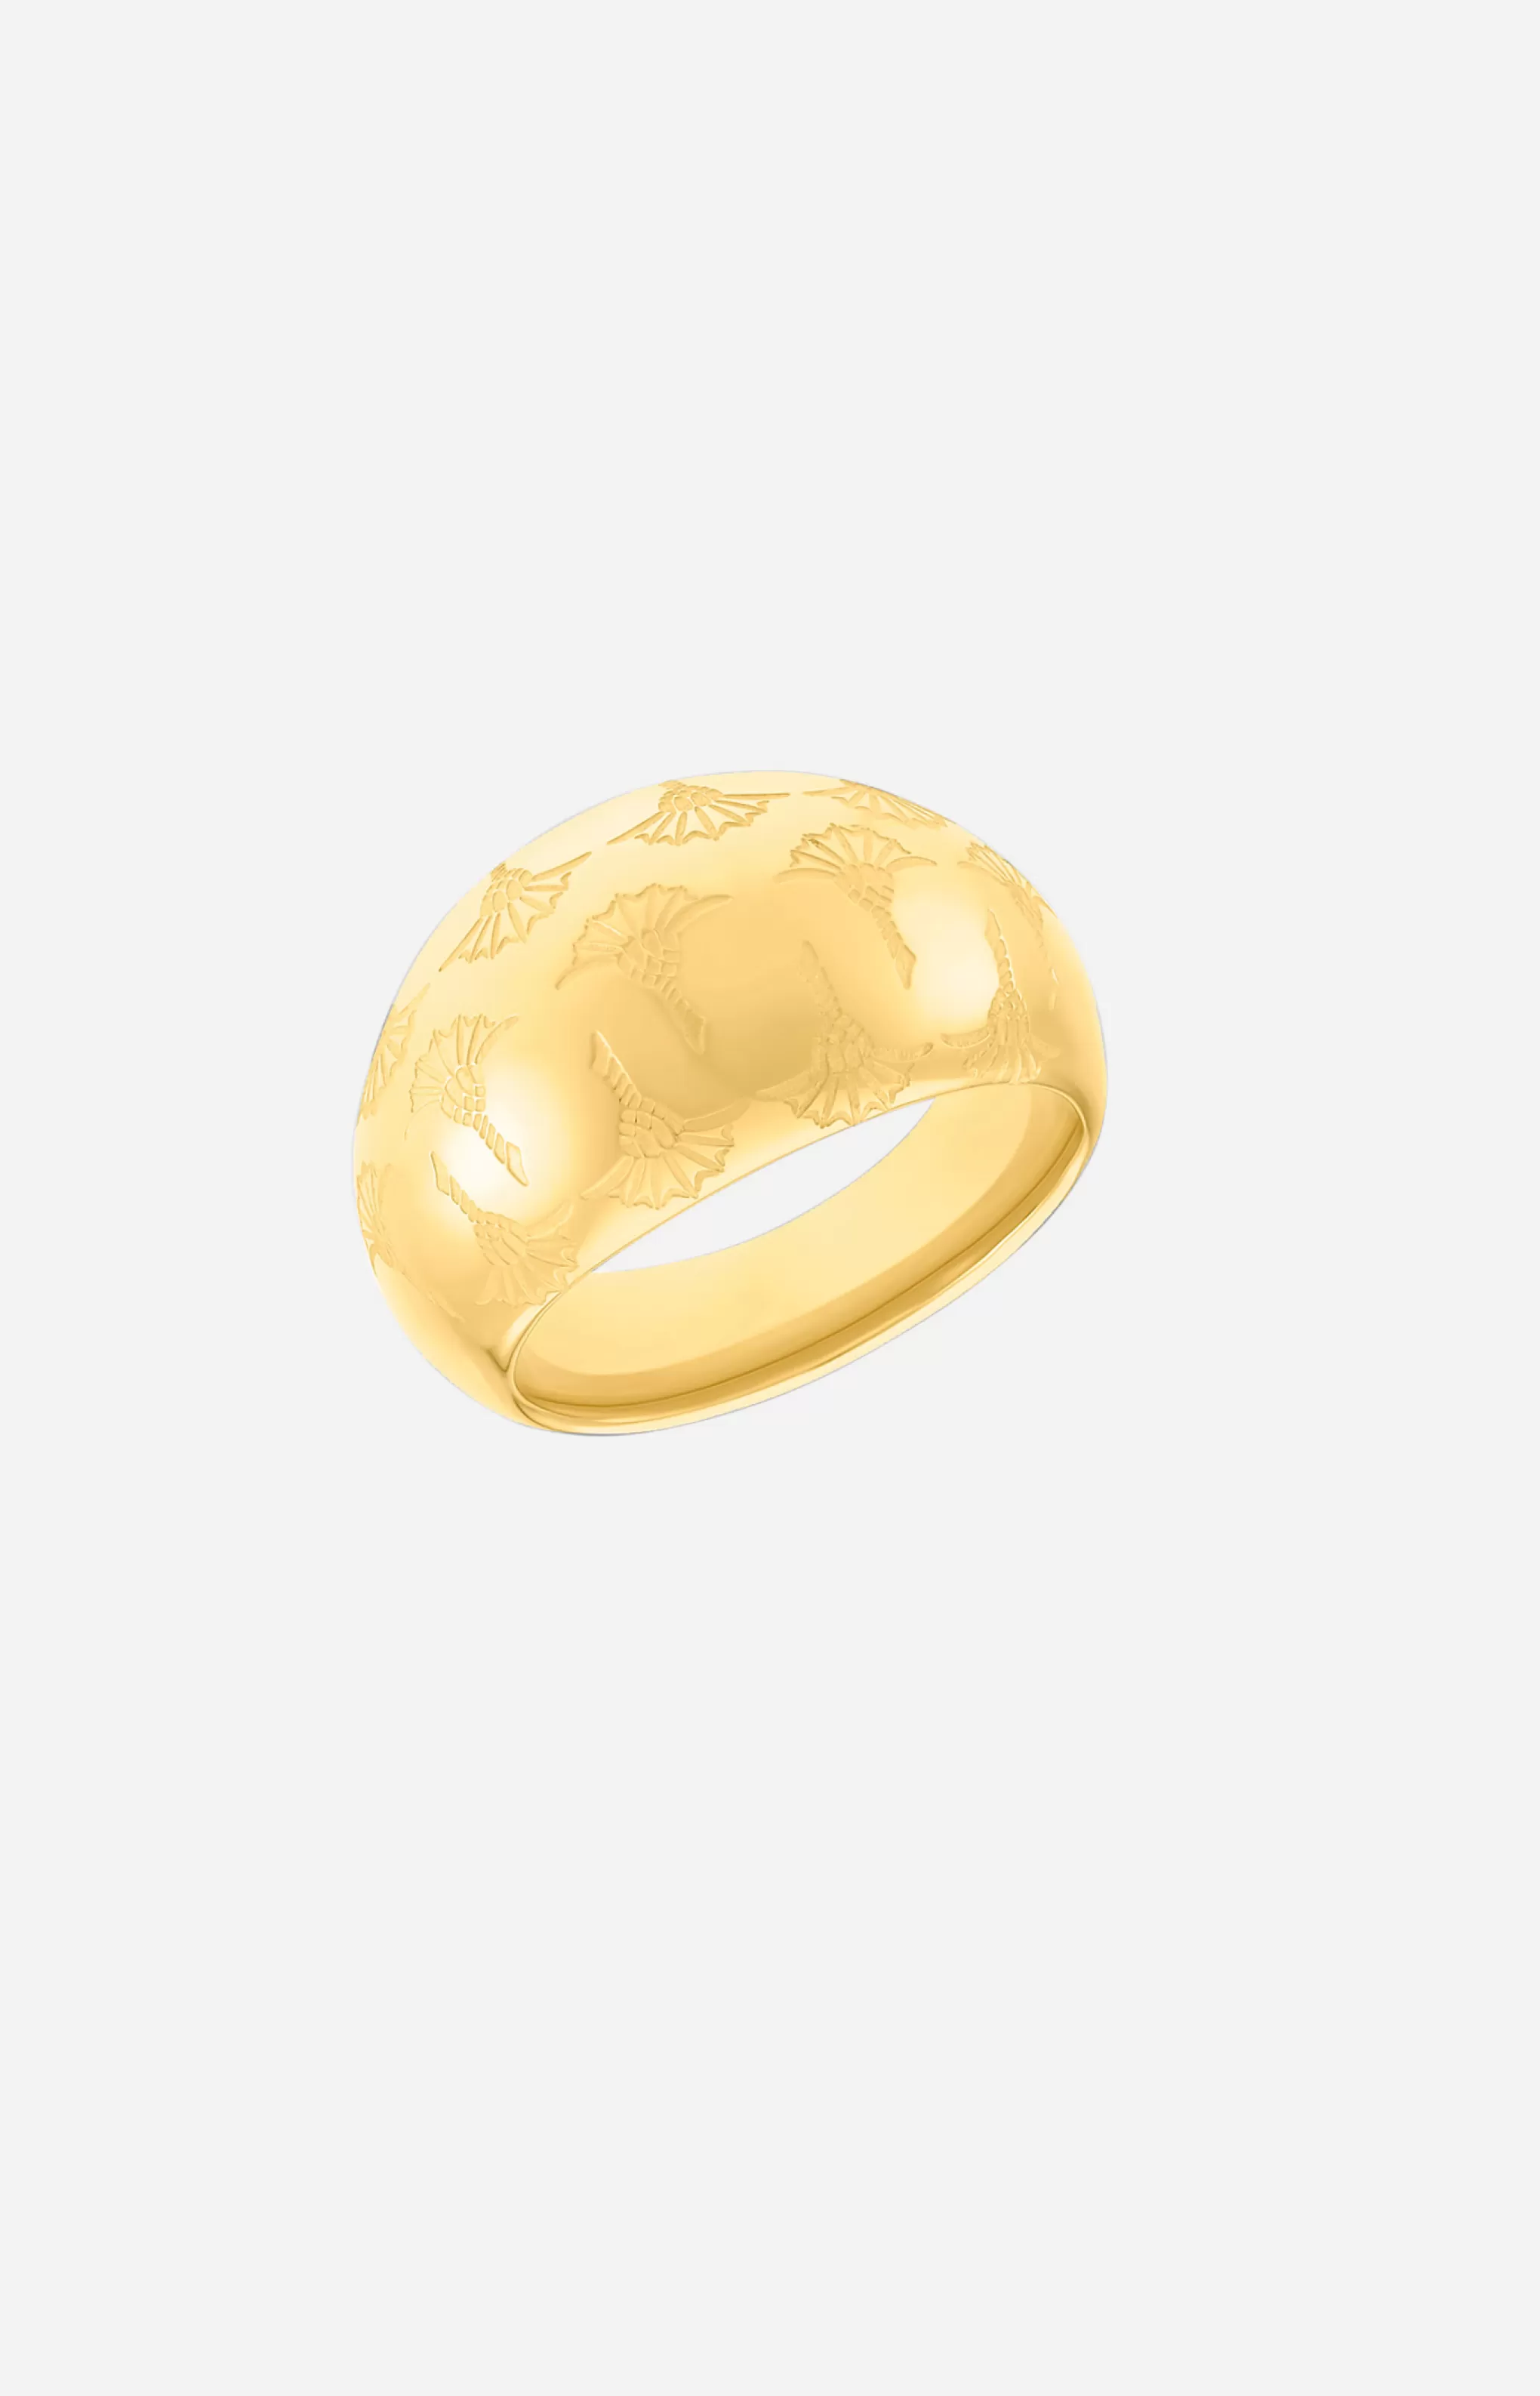 Rings | Jewellery*JOOP Rings | Jewellery Ring in